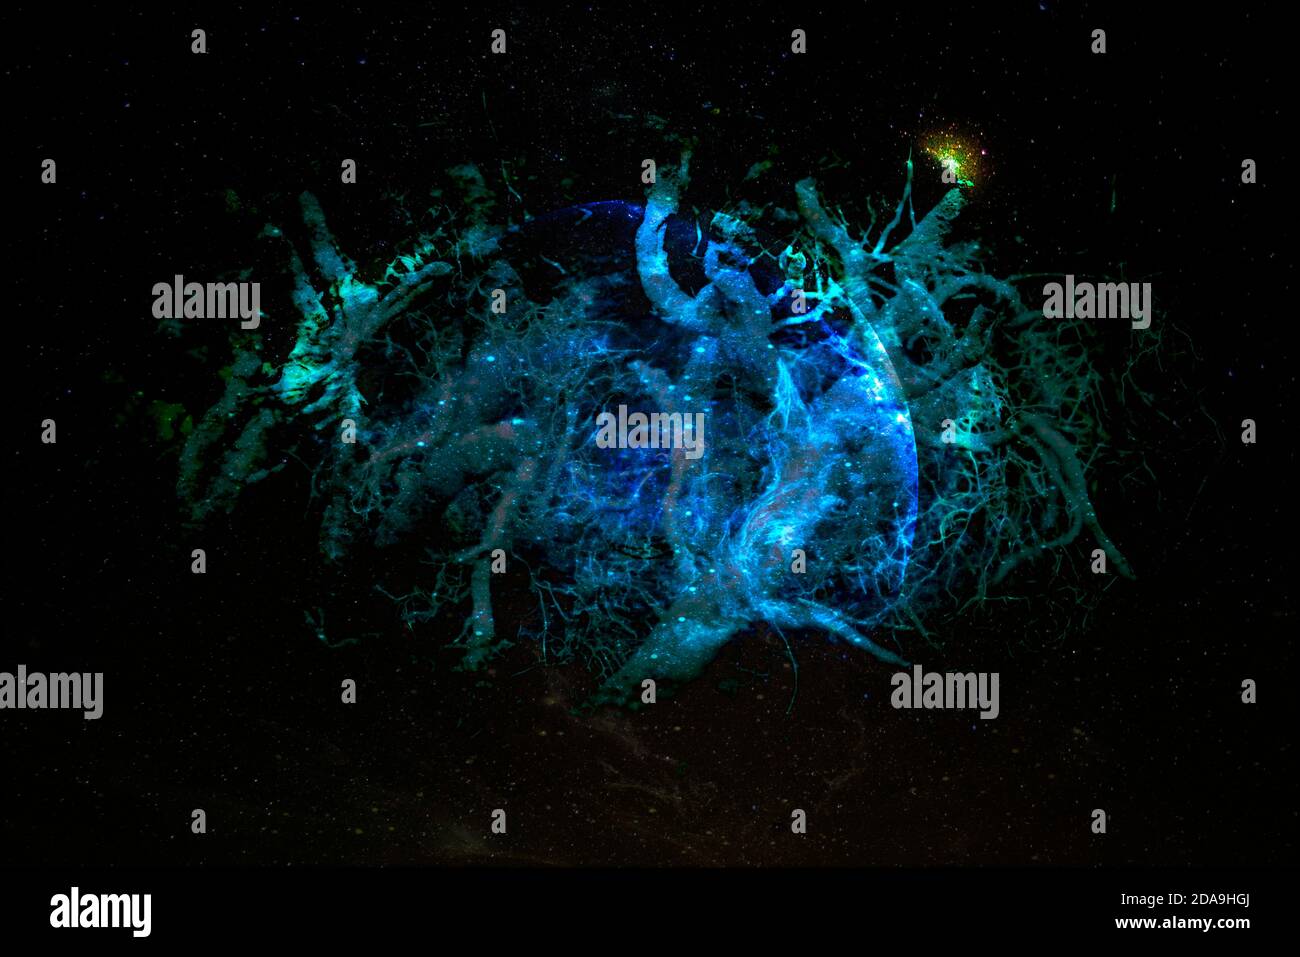 Verschachtelte Wurzeln Formen außerirdischen Planeten in der Galaxie. Elemente dieses Bildes, die von der NASA eingerichtet wurden. Stockfoto